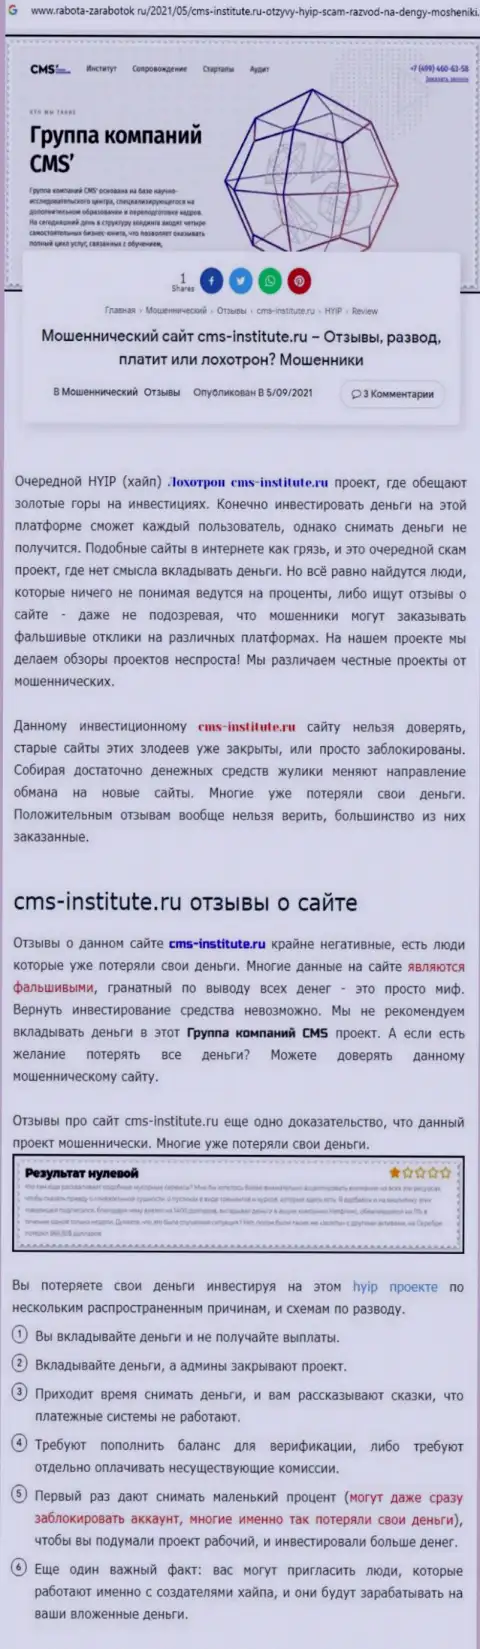 ЦМС-Институт Ру - наглый грабеж клиентов (обзор противоправных действий)